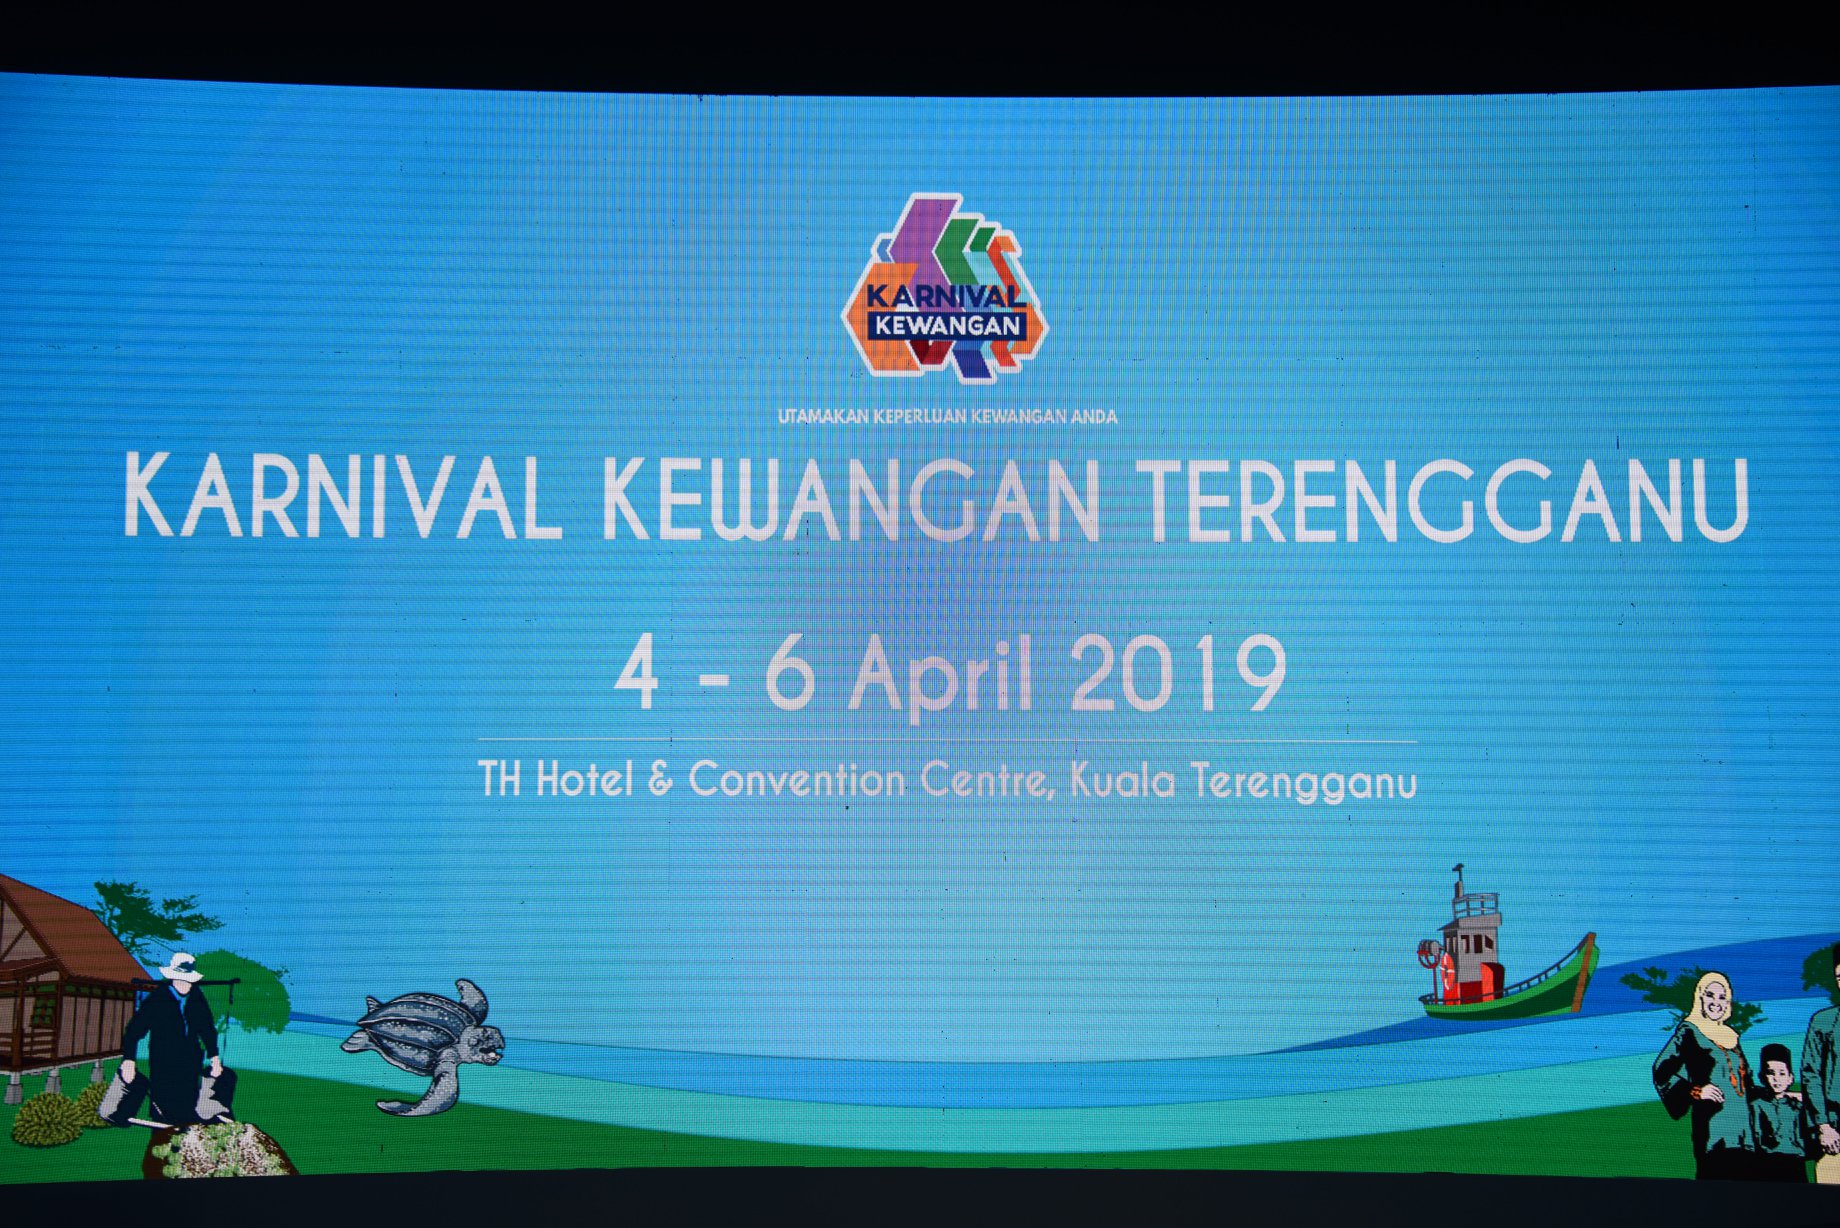 Karnival Kewangan Terengganu 2019